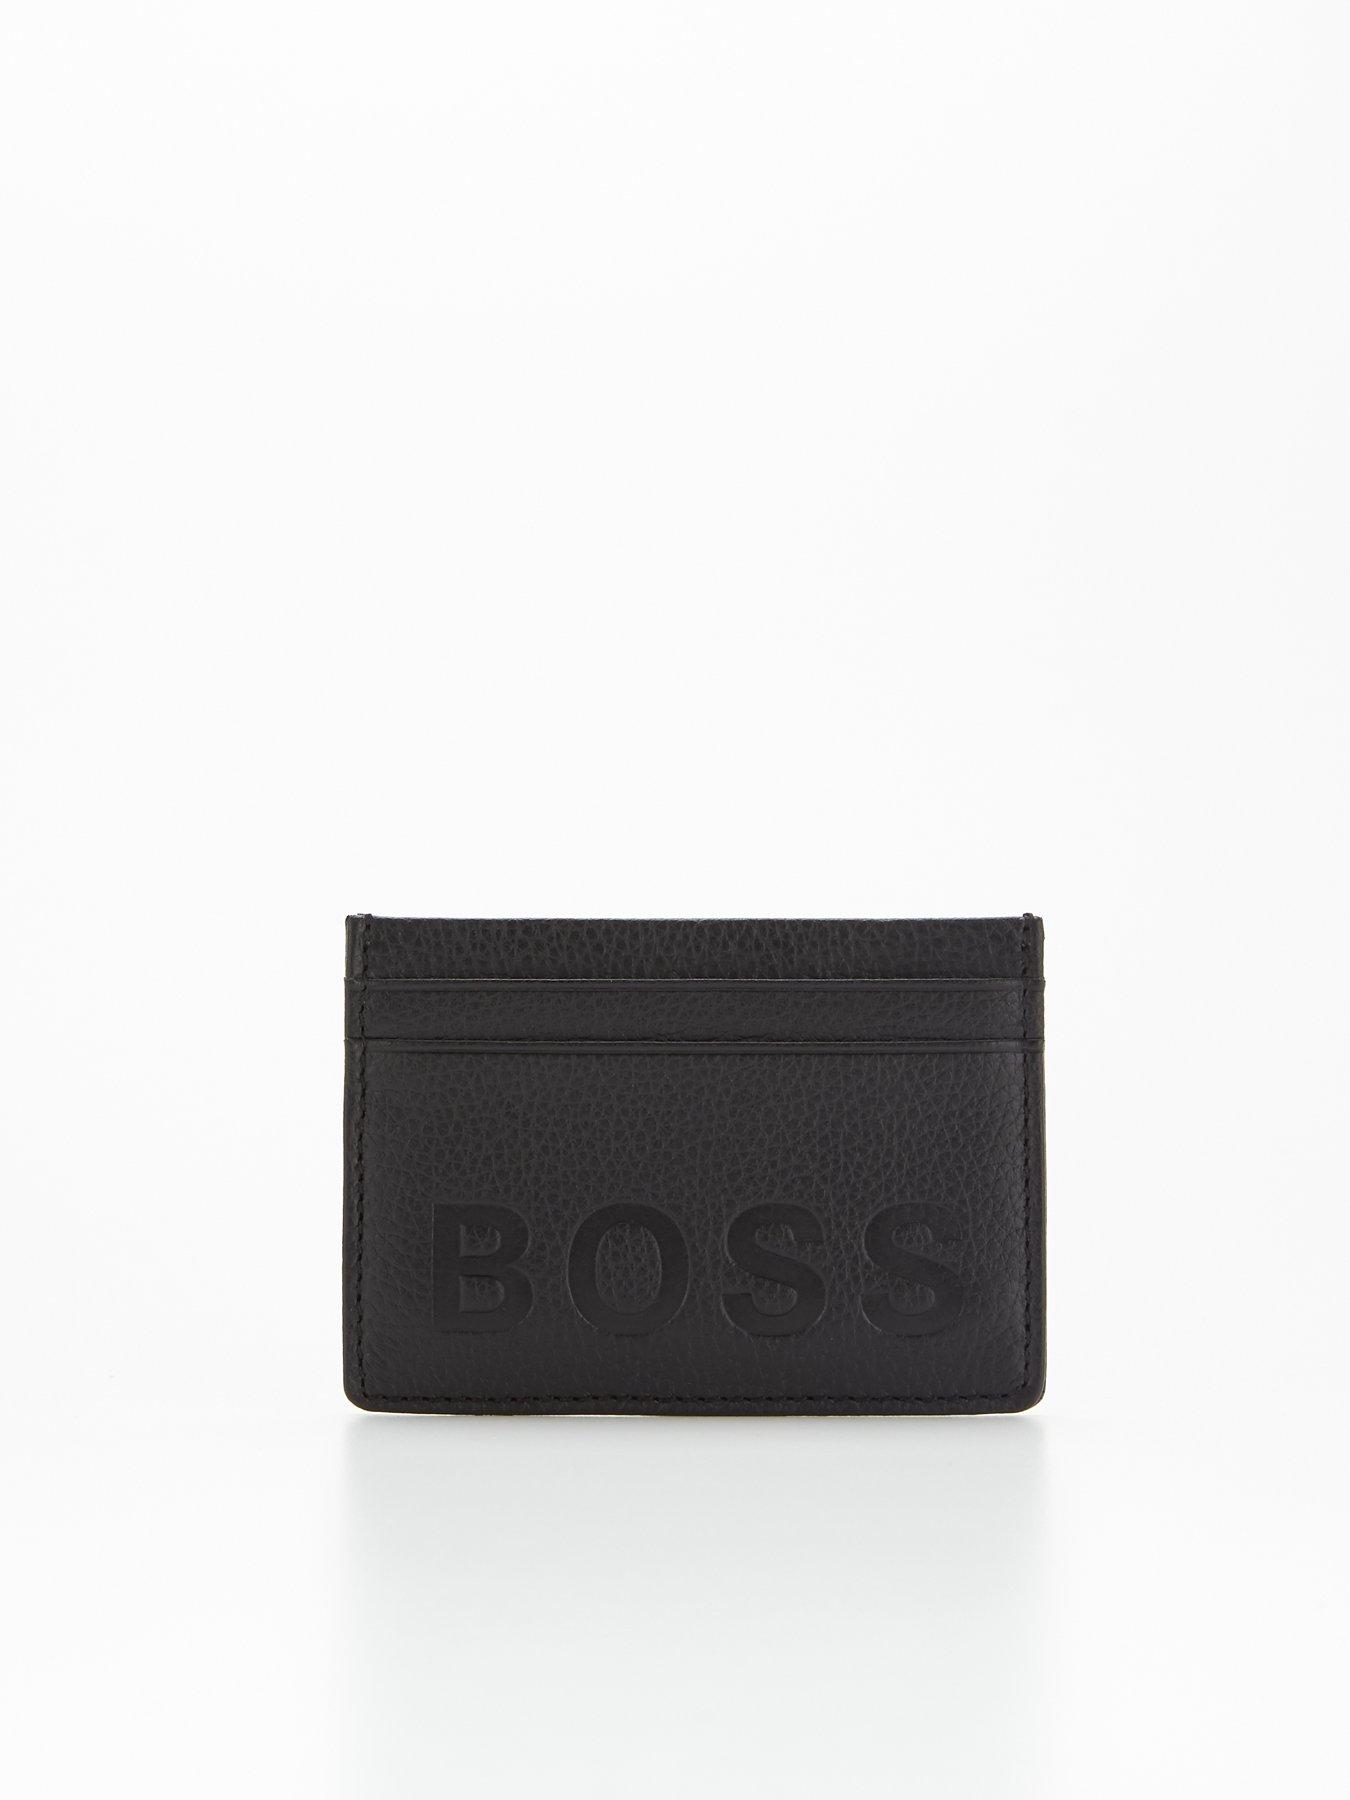 Men Wallet & Credit Card Holder Gift Set - Black